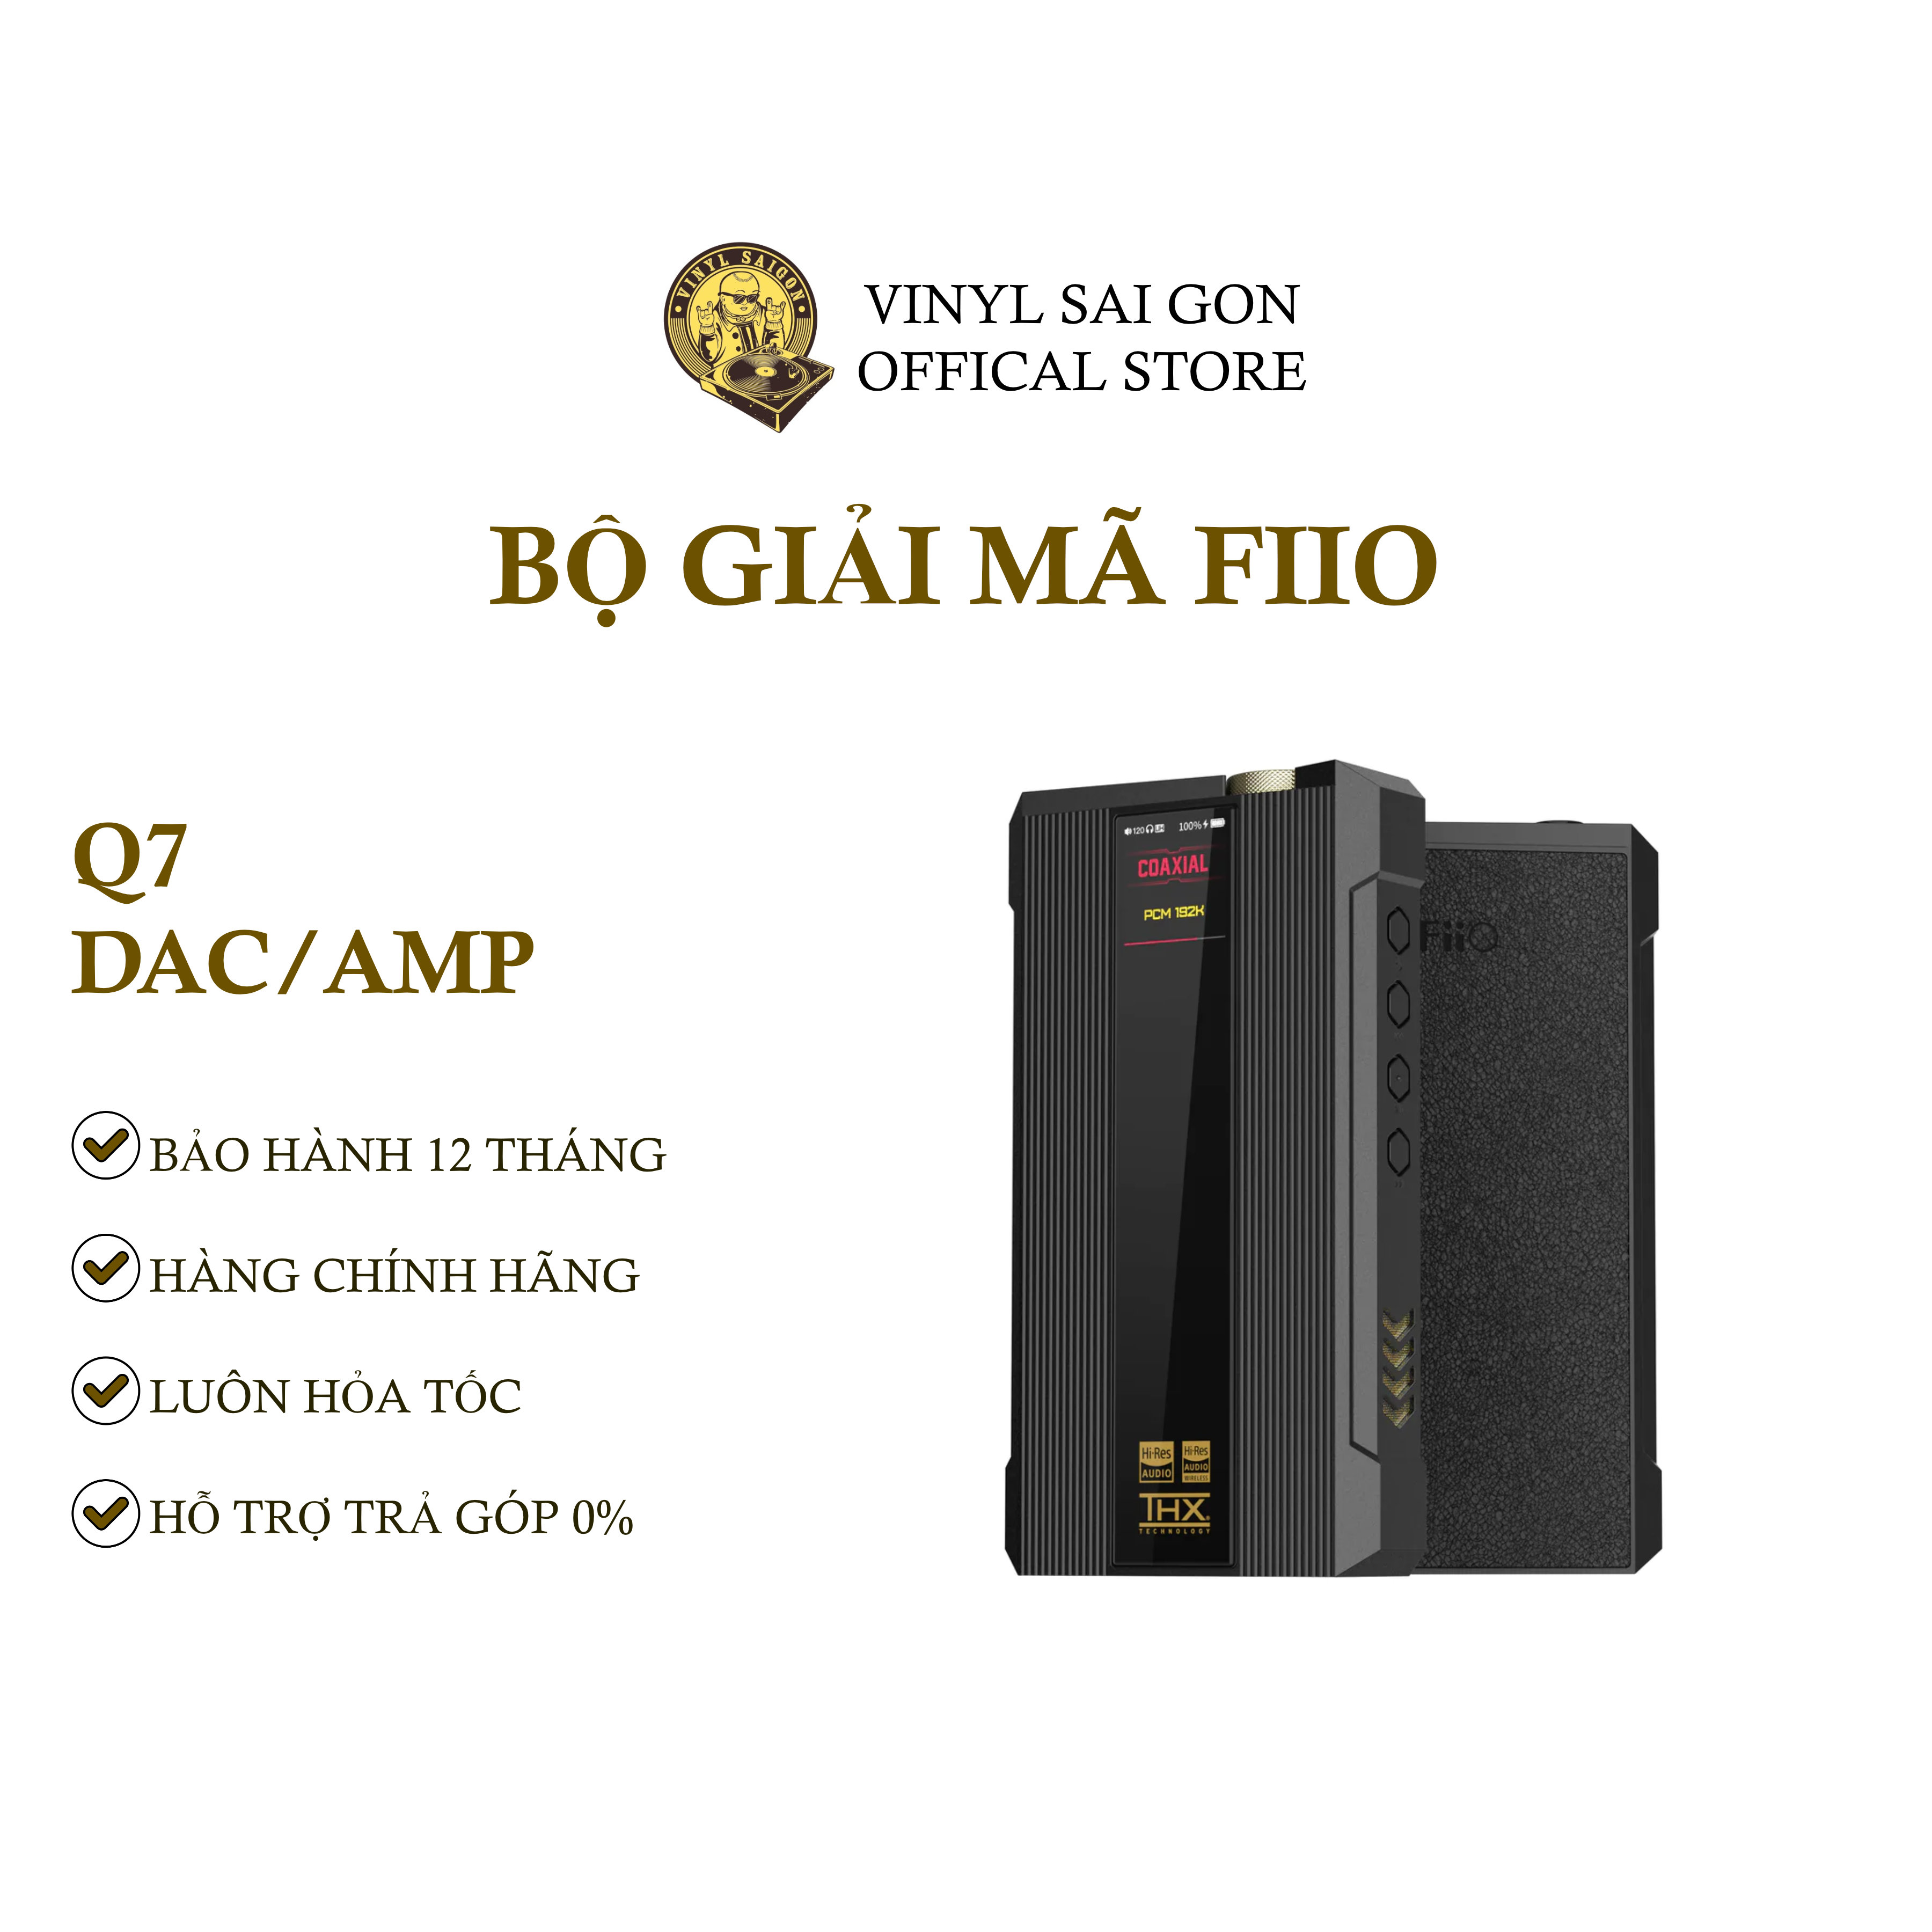 Bộ Giải Mã Dac/Amp FiiO Q7 - Hàng Nhập Khẩu